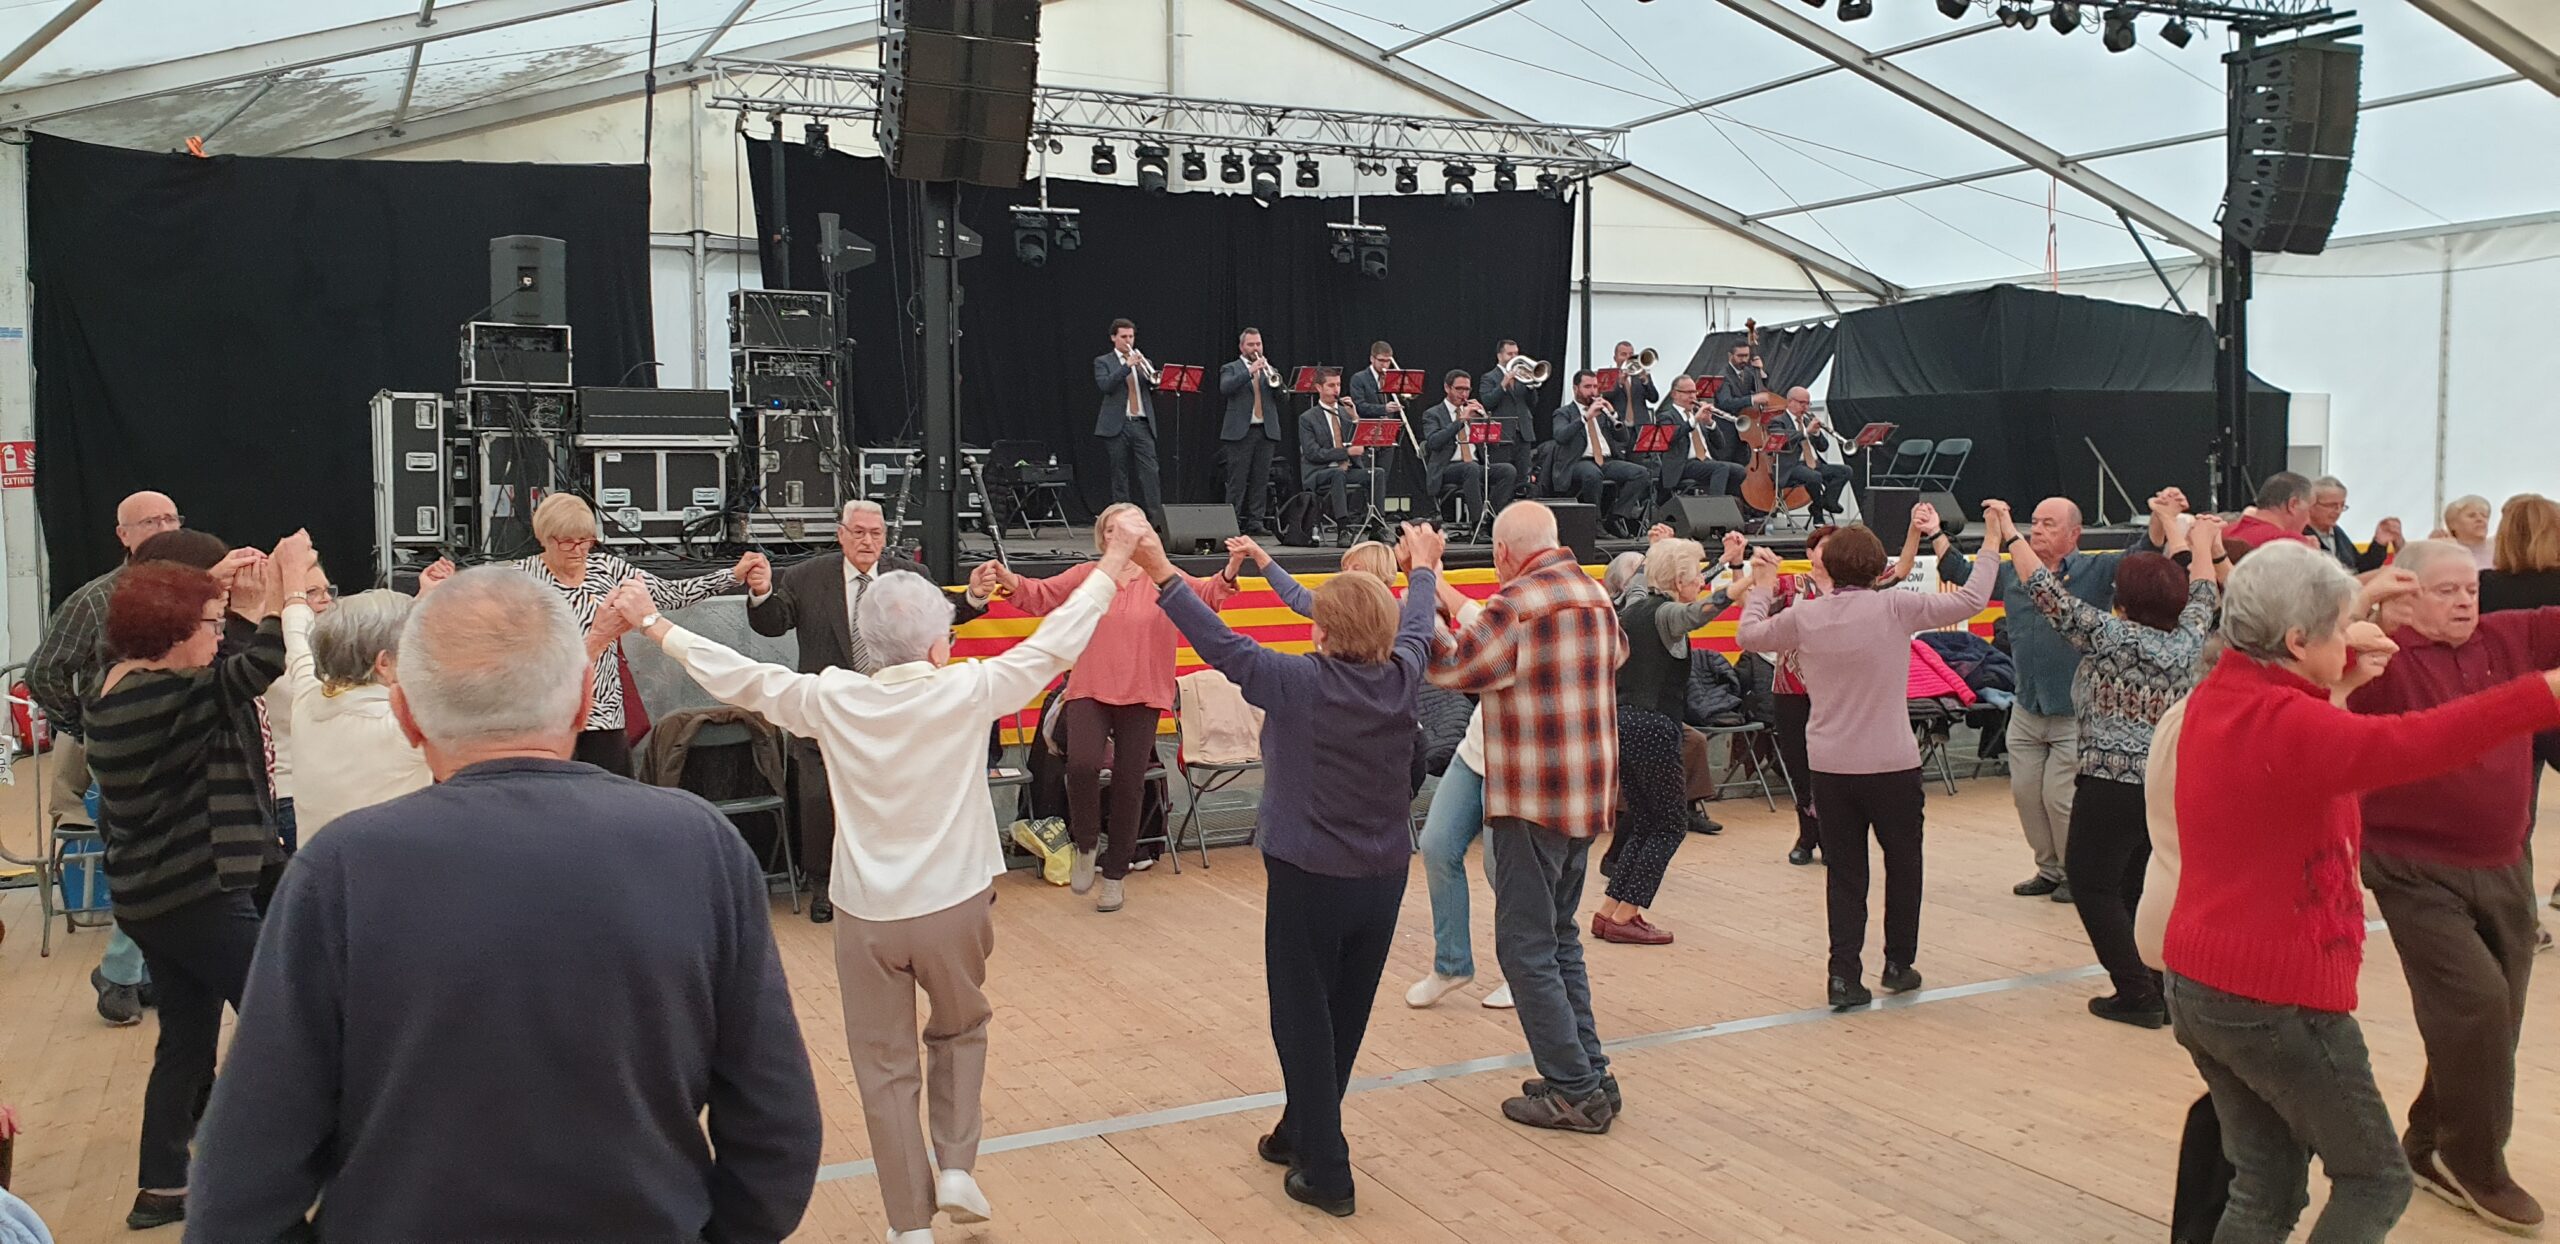 Persones ballant sardanes a la Festa Major del barri de Sant Andreu de Palomar